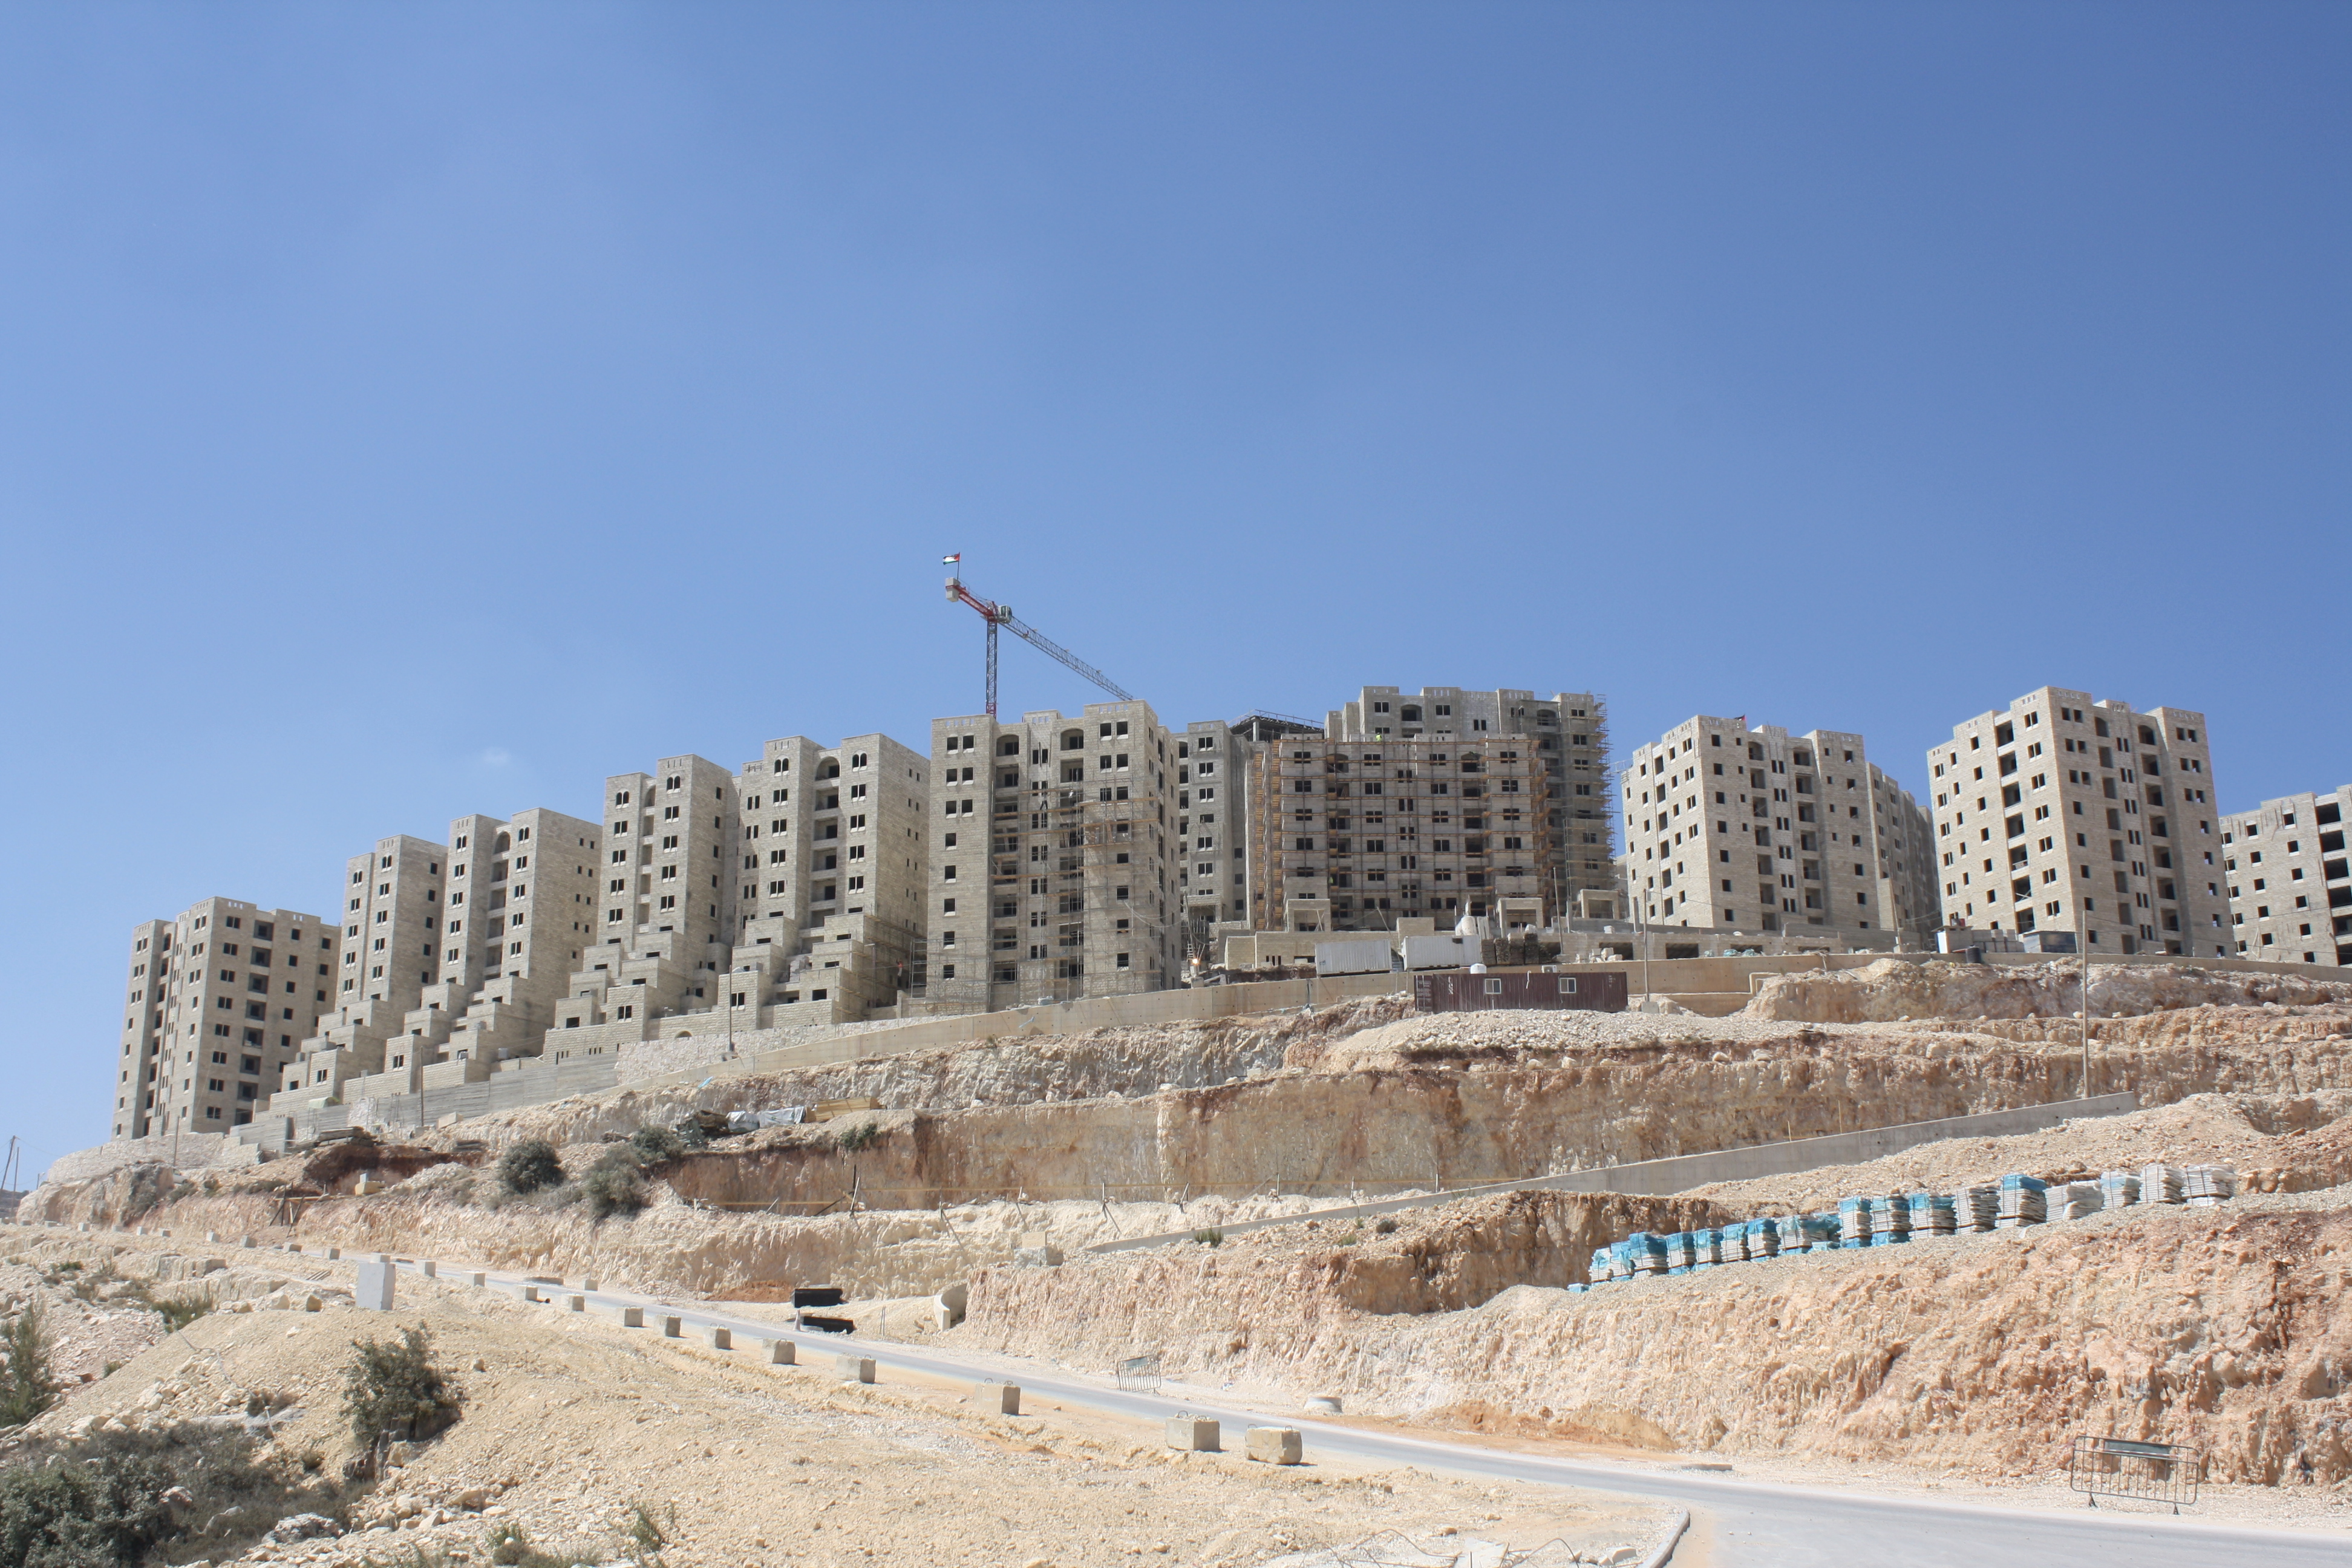 הגרסה הפלסטינית למודיעין. שכונות בבנייה בעיר רוואבי. צילום: מיכאל יעקובסון